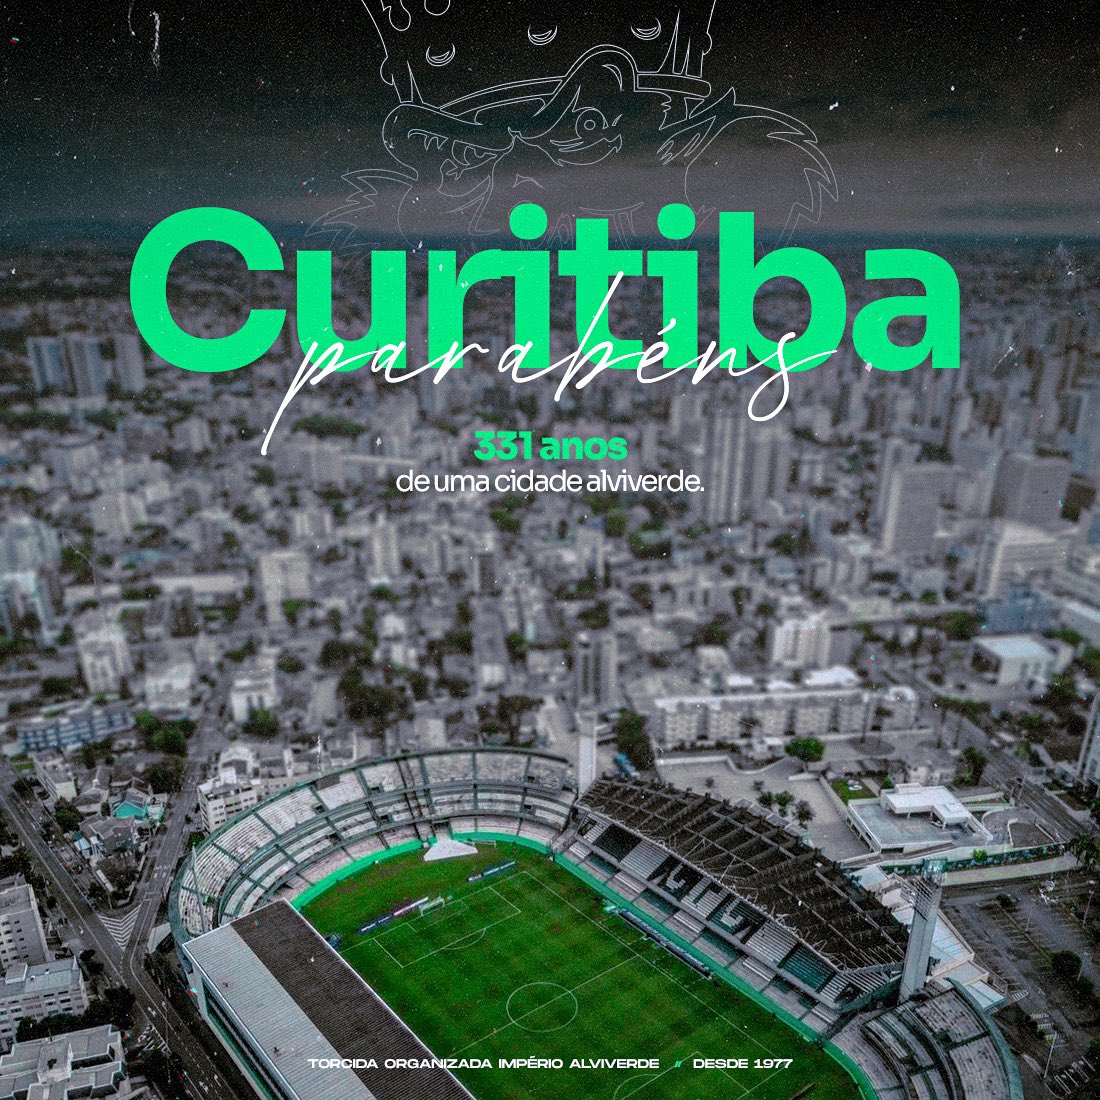 Parabéns pelos seus 331 anos, Curitiba! Orgulho de ser Curitibano. Orgulho de ser Coxa. #AniversáriodeCuritiba